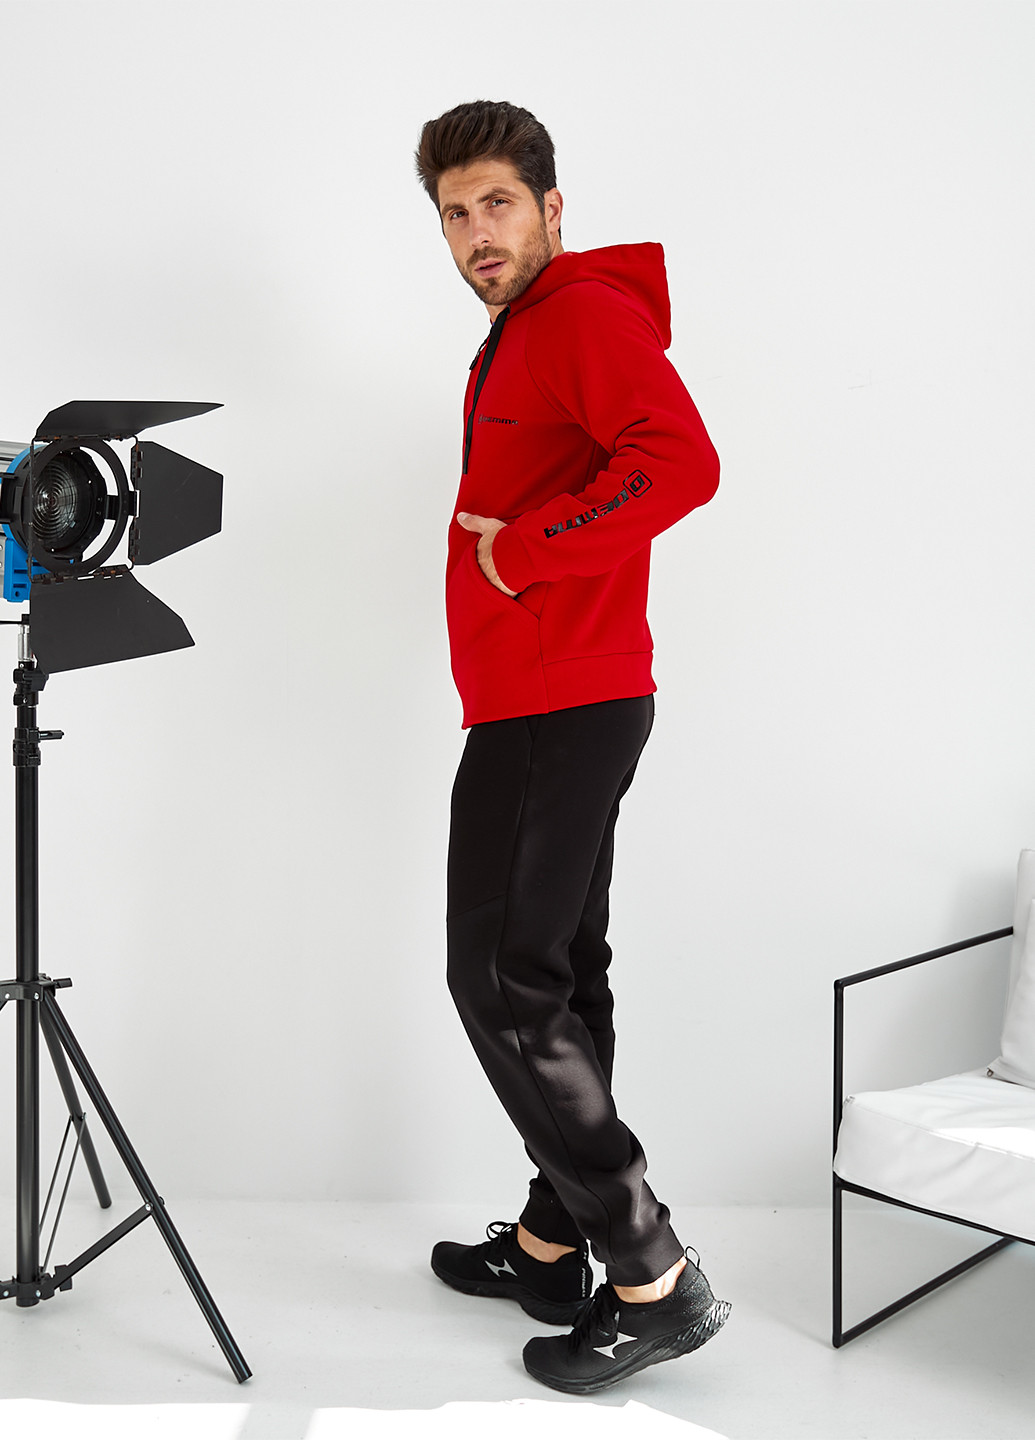 Костюм (толстовка, брюки) Demma брючный логотип красный спортивный хлопок, трикотаж